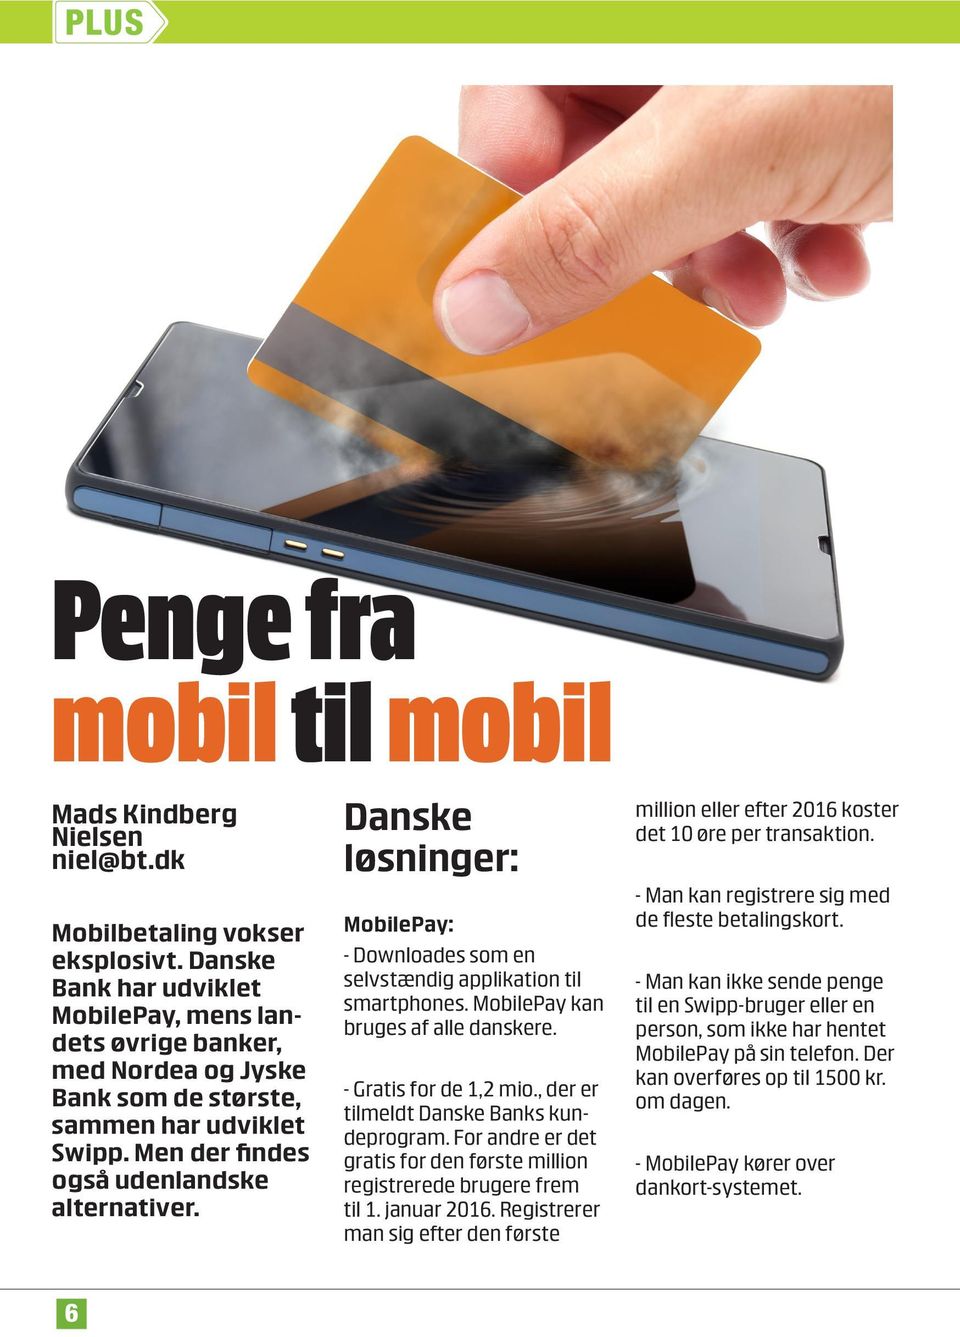 Danske løsninger: MobilePay: - Downloades som en selvstændig applikation til smartphones. MobilePay kan bruges af alle danskere. - Gratis for de 1,2 mio., der er tilmeldt Danske Banks kundeprogram.